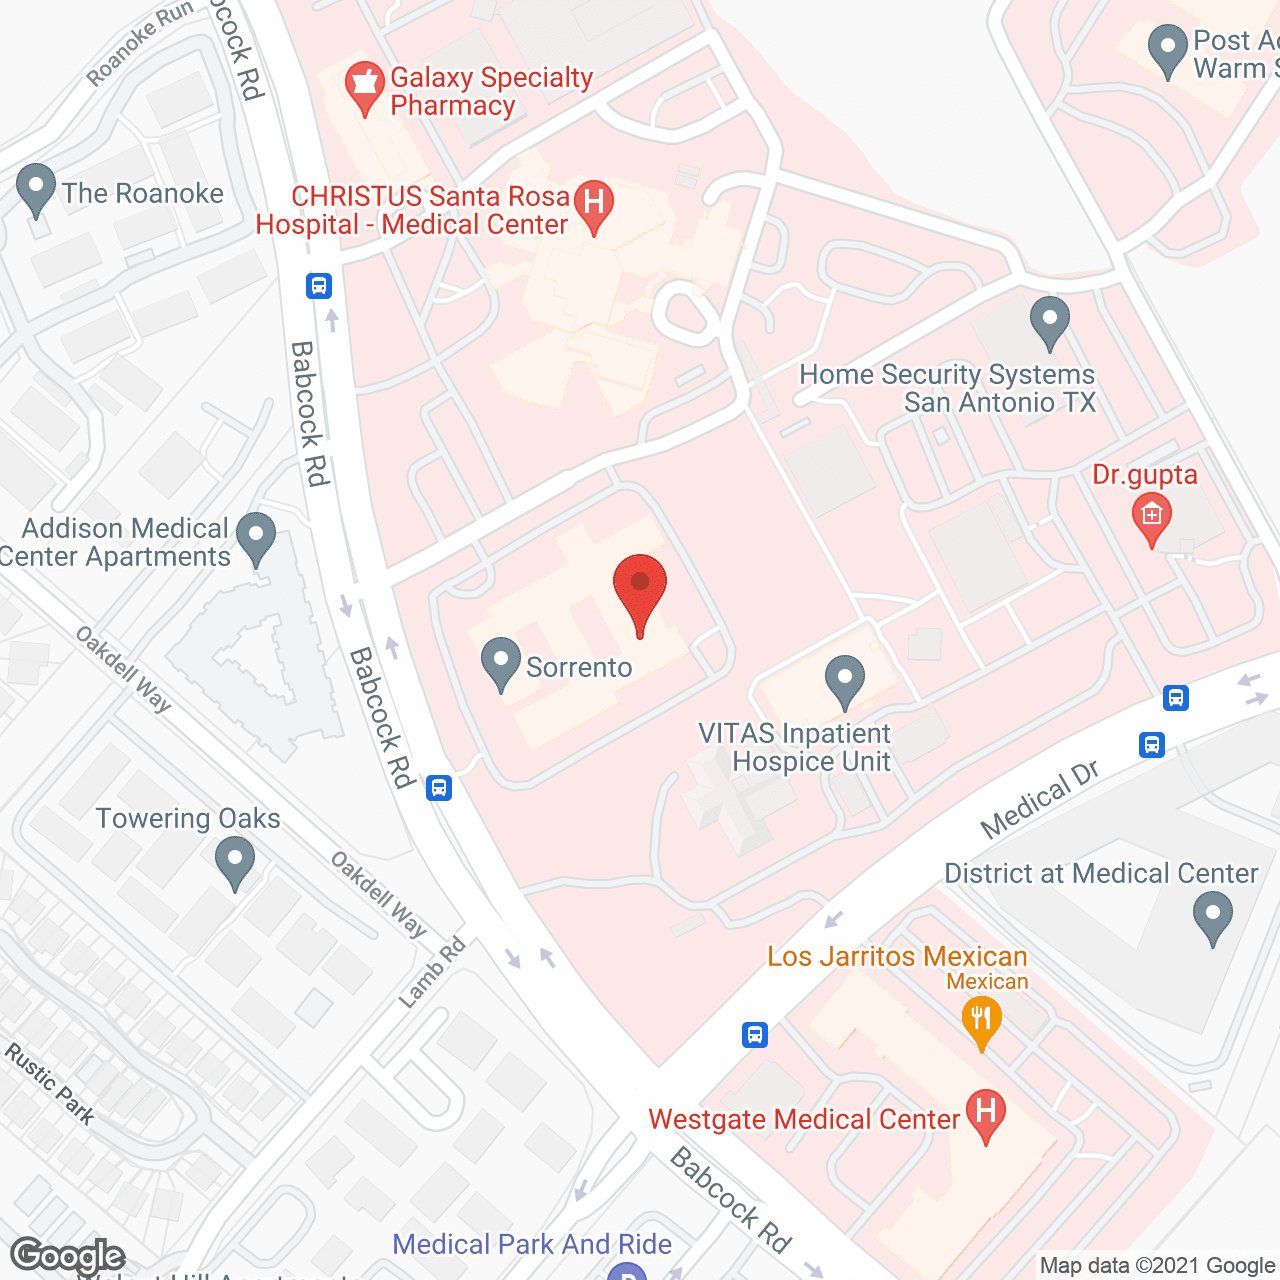 Sorrento in google map